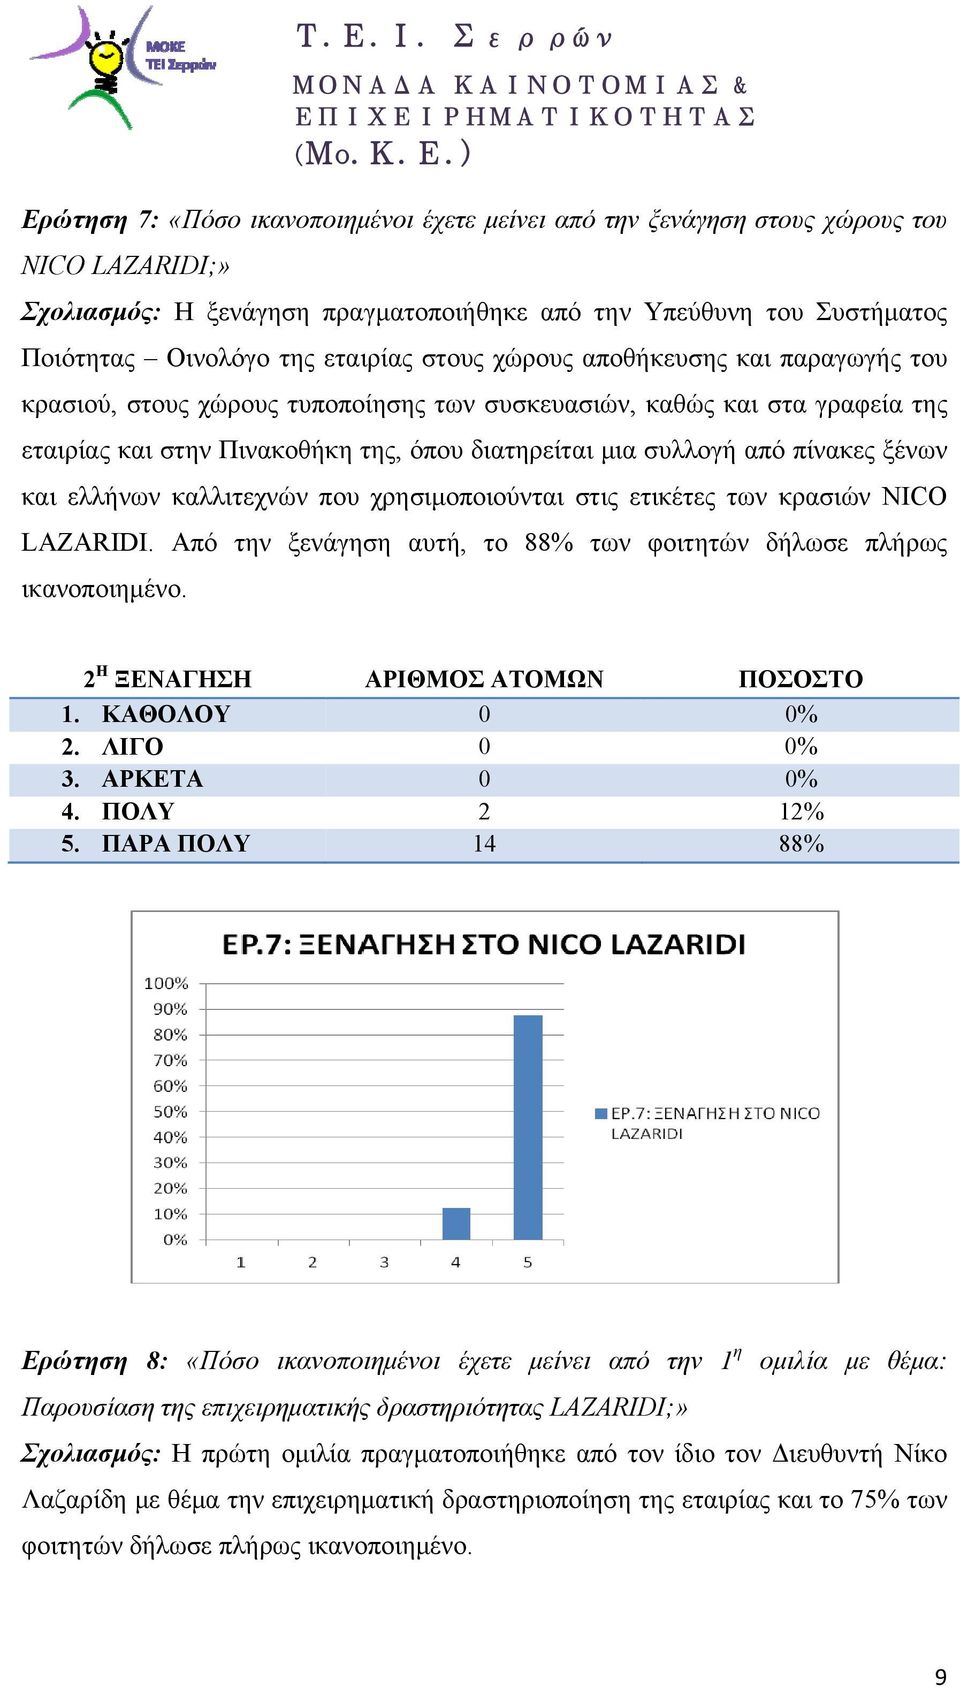 ξένων και ελλήνων καλλιτεχνών που χρησιμοποιούνται στις ετικέτες των κρασιών NICO LAZARIDI. Από την ξενάγηση αυτή, το 88% των φοιτητών δήλωσε πλήρως ικανοποιημένο.